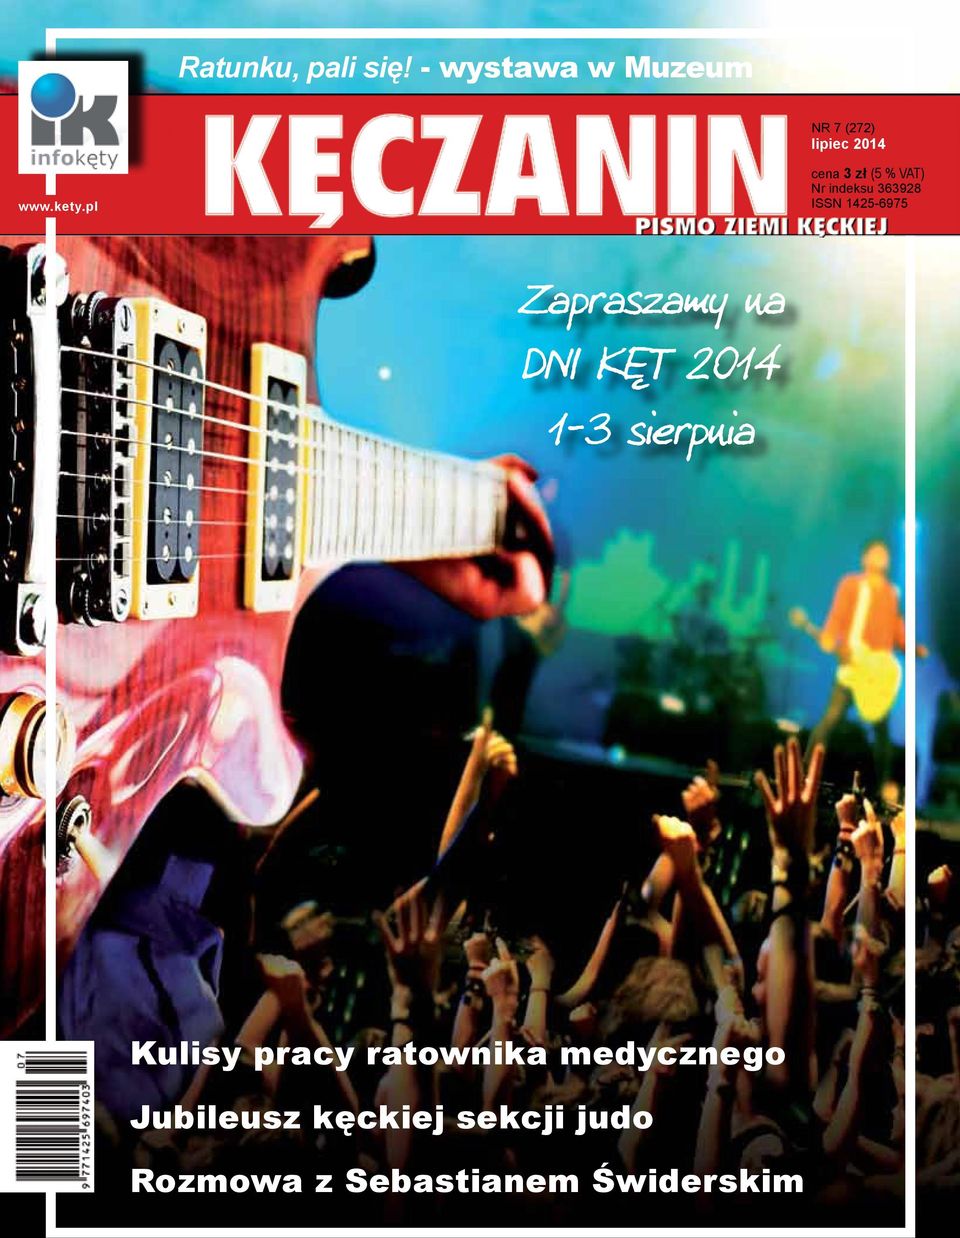 kety.pl www.kety.pl cena 2,50 3 zł (5 zł% VAT) Nr indeksu 363928 ISSN